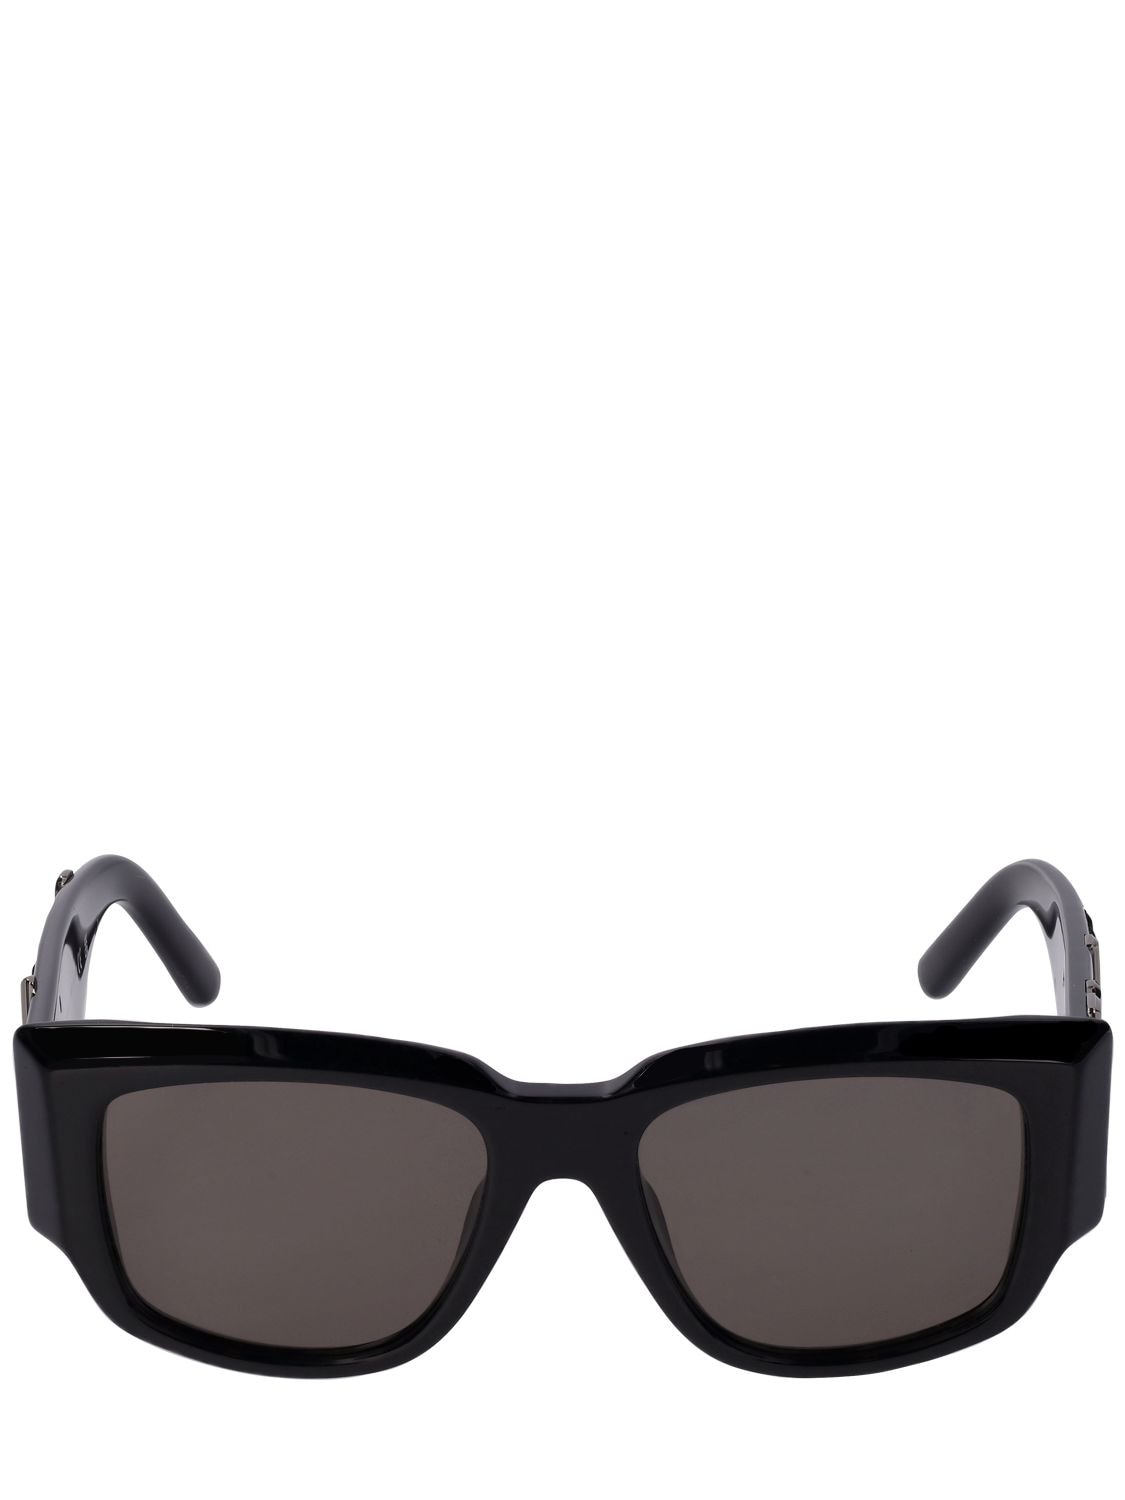 Image of Laguna Squared Acetate Sunglasses